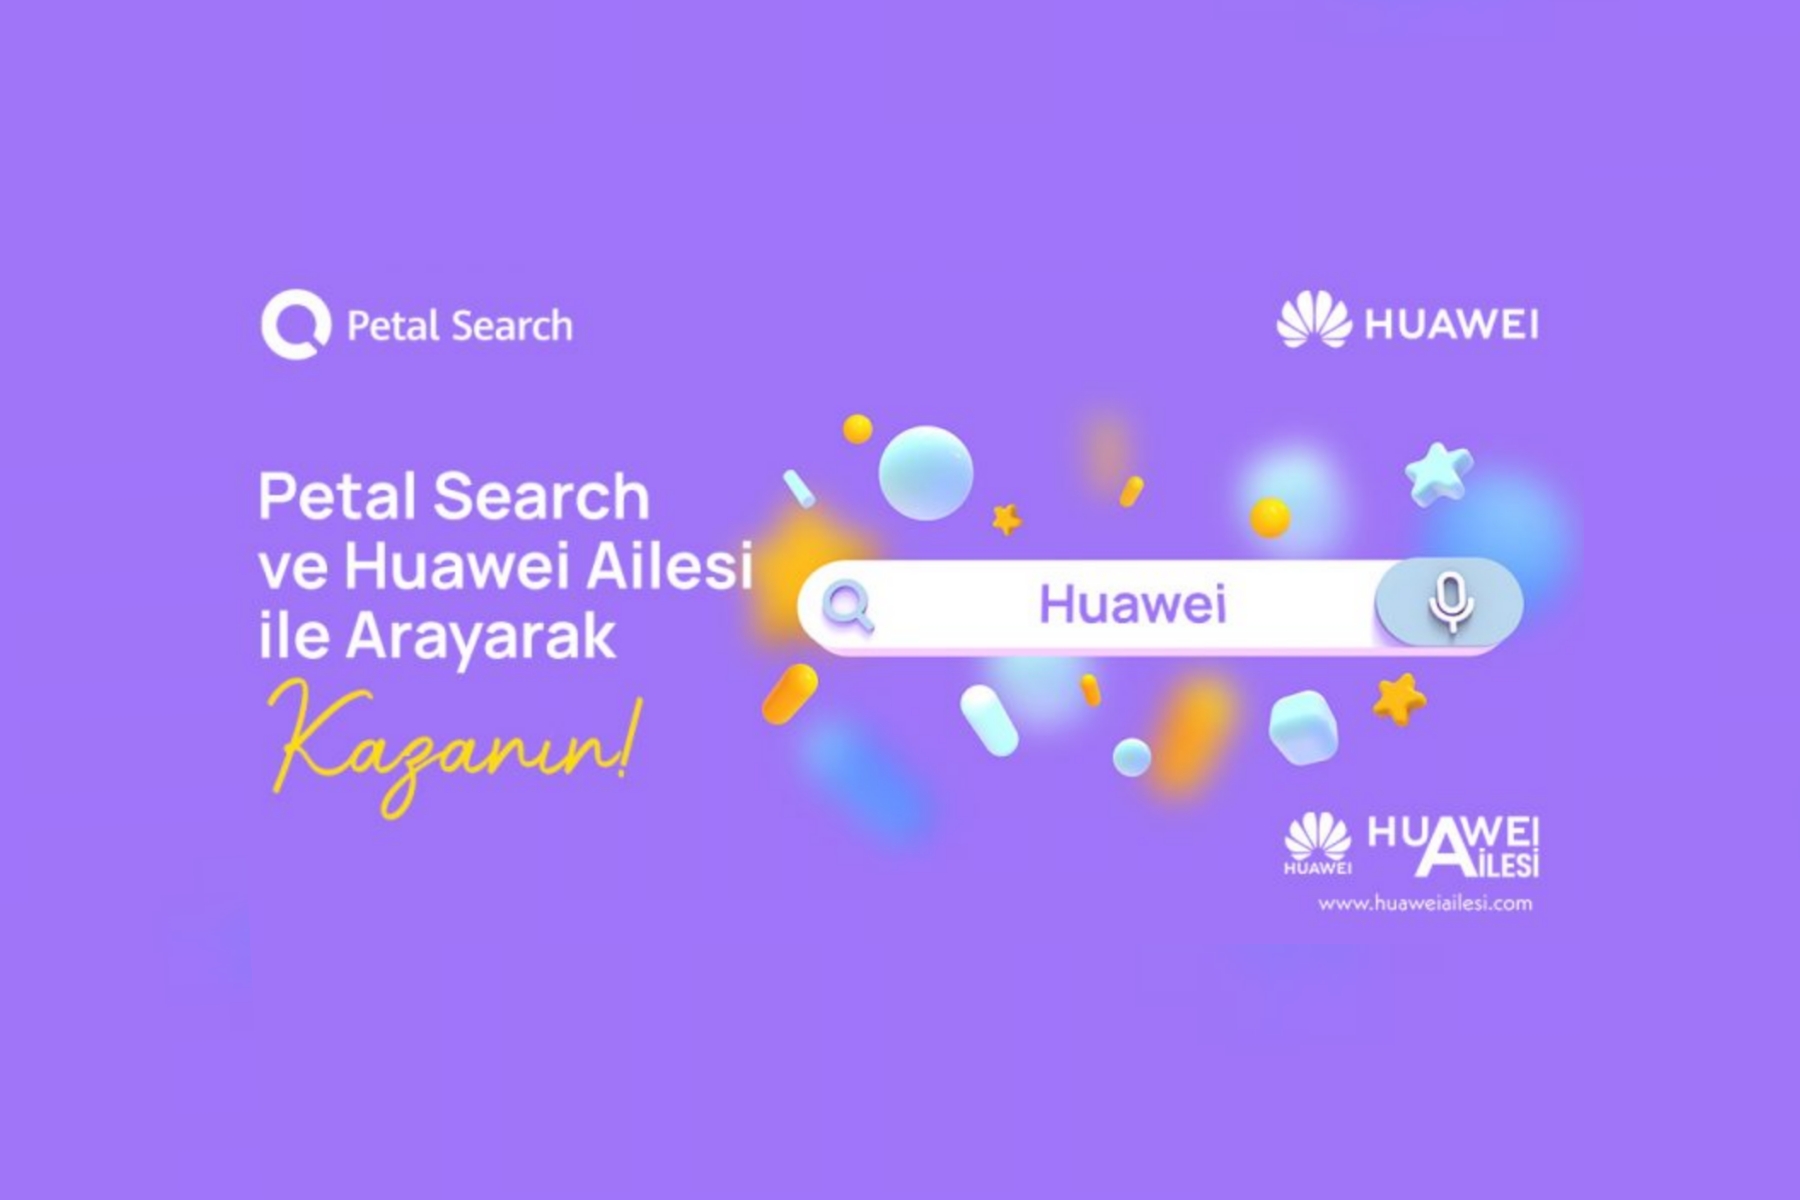 Petal Search ve Huawei Ailesi ile Arayarak Kazanın!